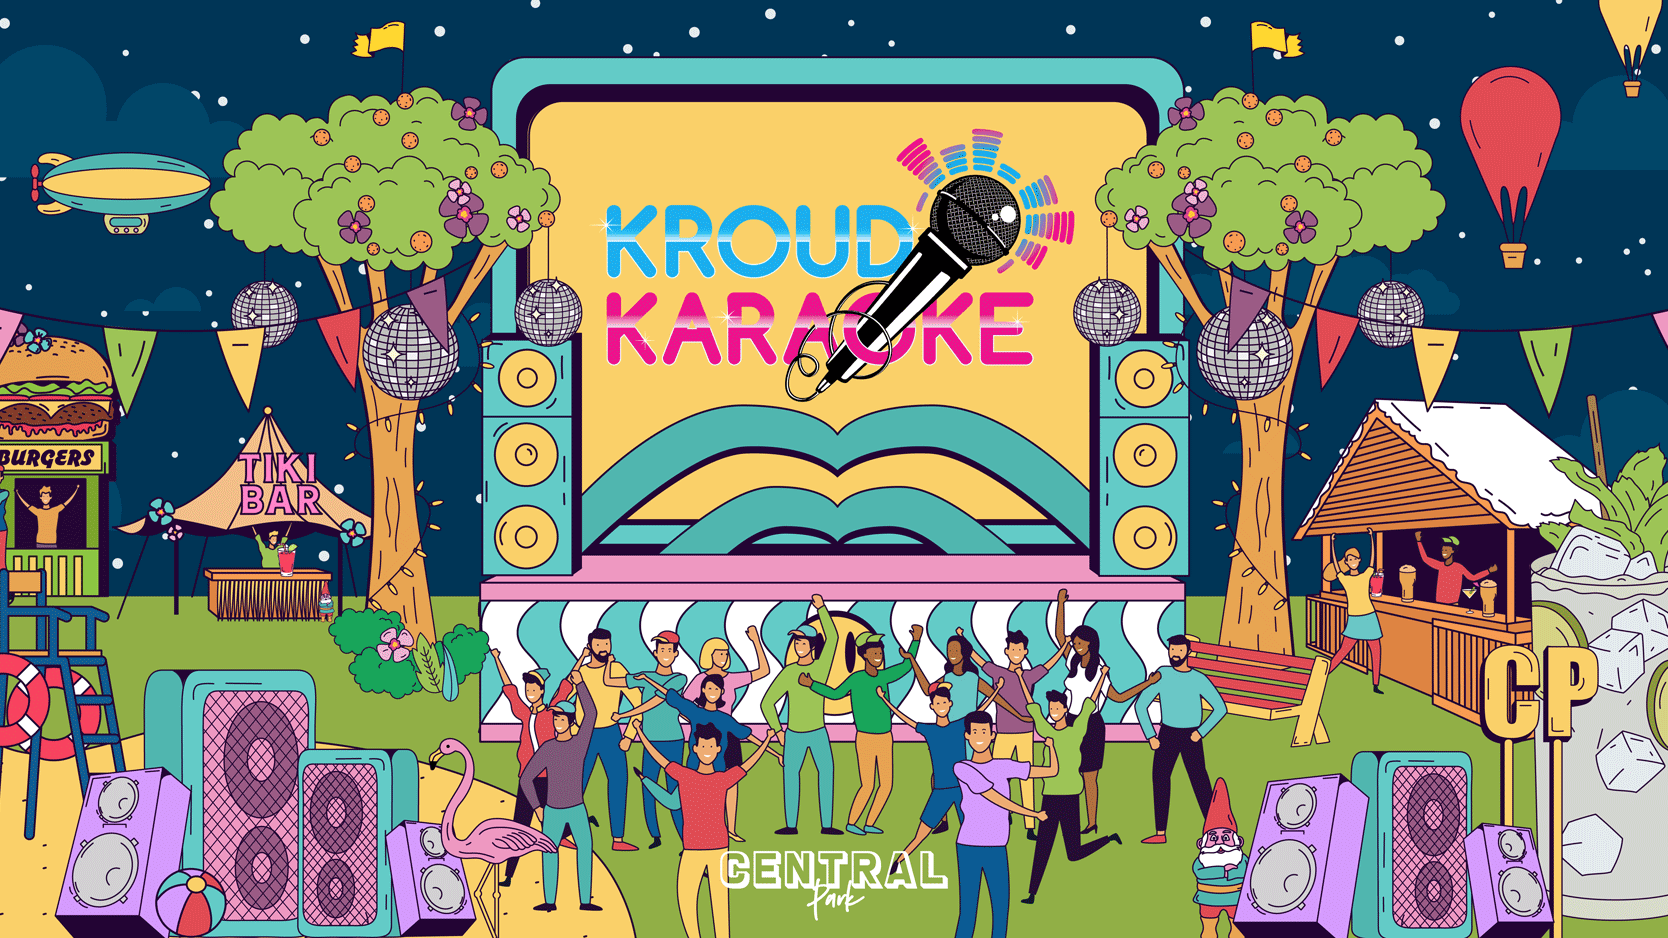 Kroud Karaoke 17th June